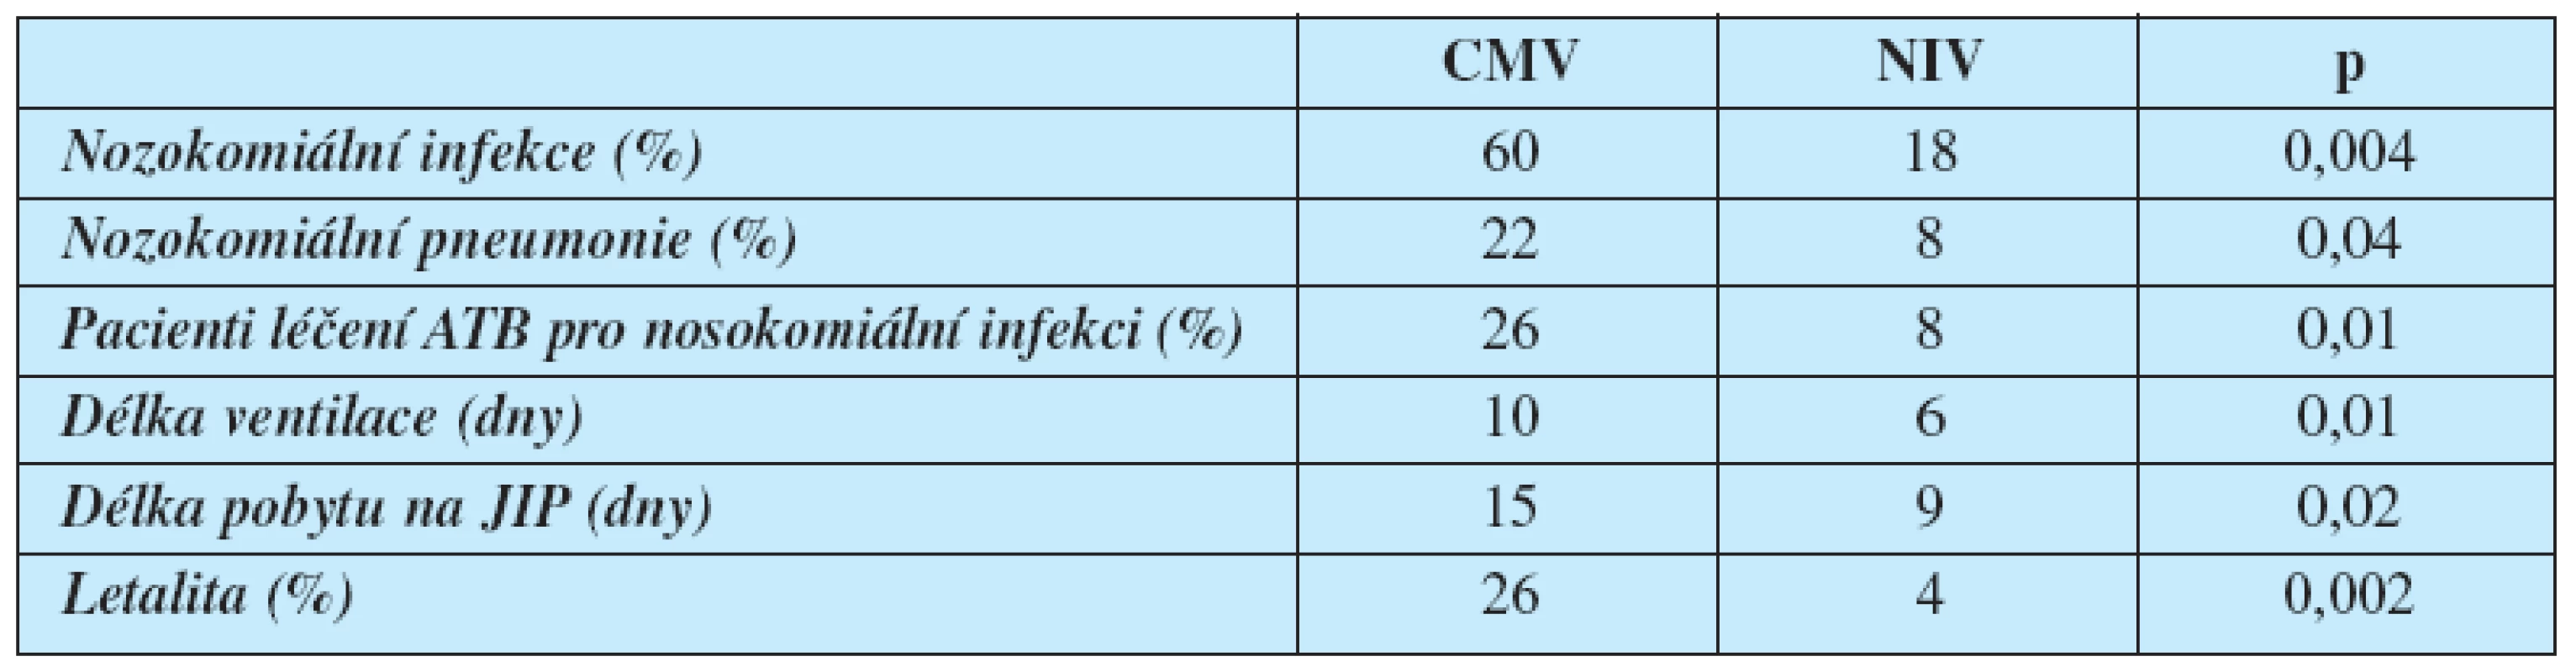 Vliv NIV a konvenční mechanické ventilace (CMV) na výskyt nozokomiálních nfekcí a délku hospitalizace (12)
NIV – neinvazivní ventilace, CMV – konvenční invazivní mechanická ventilace